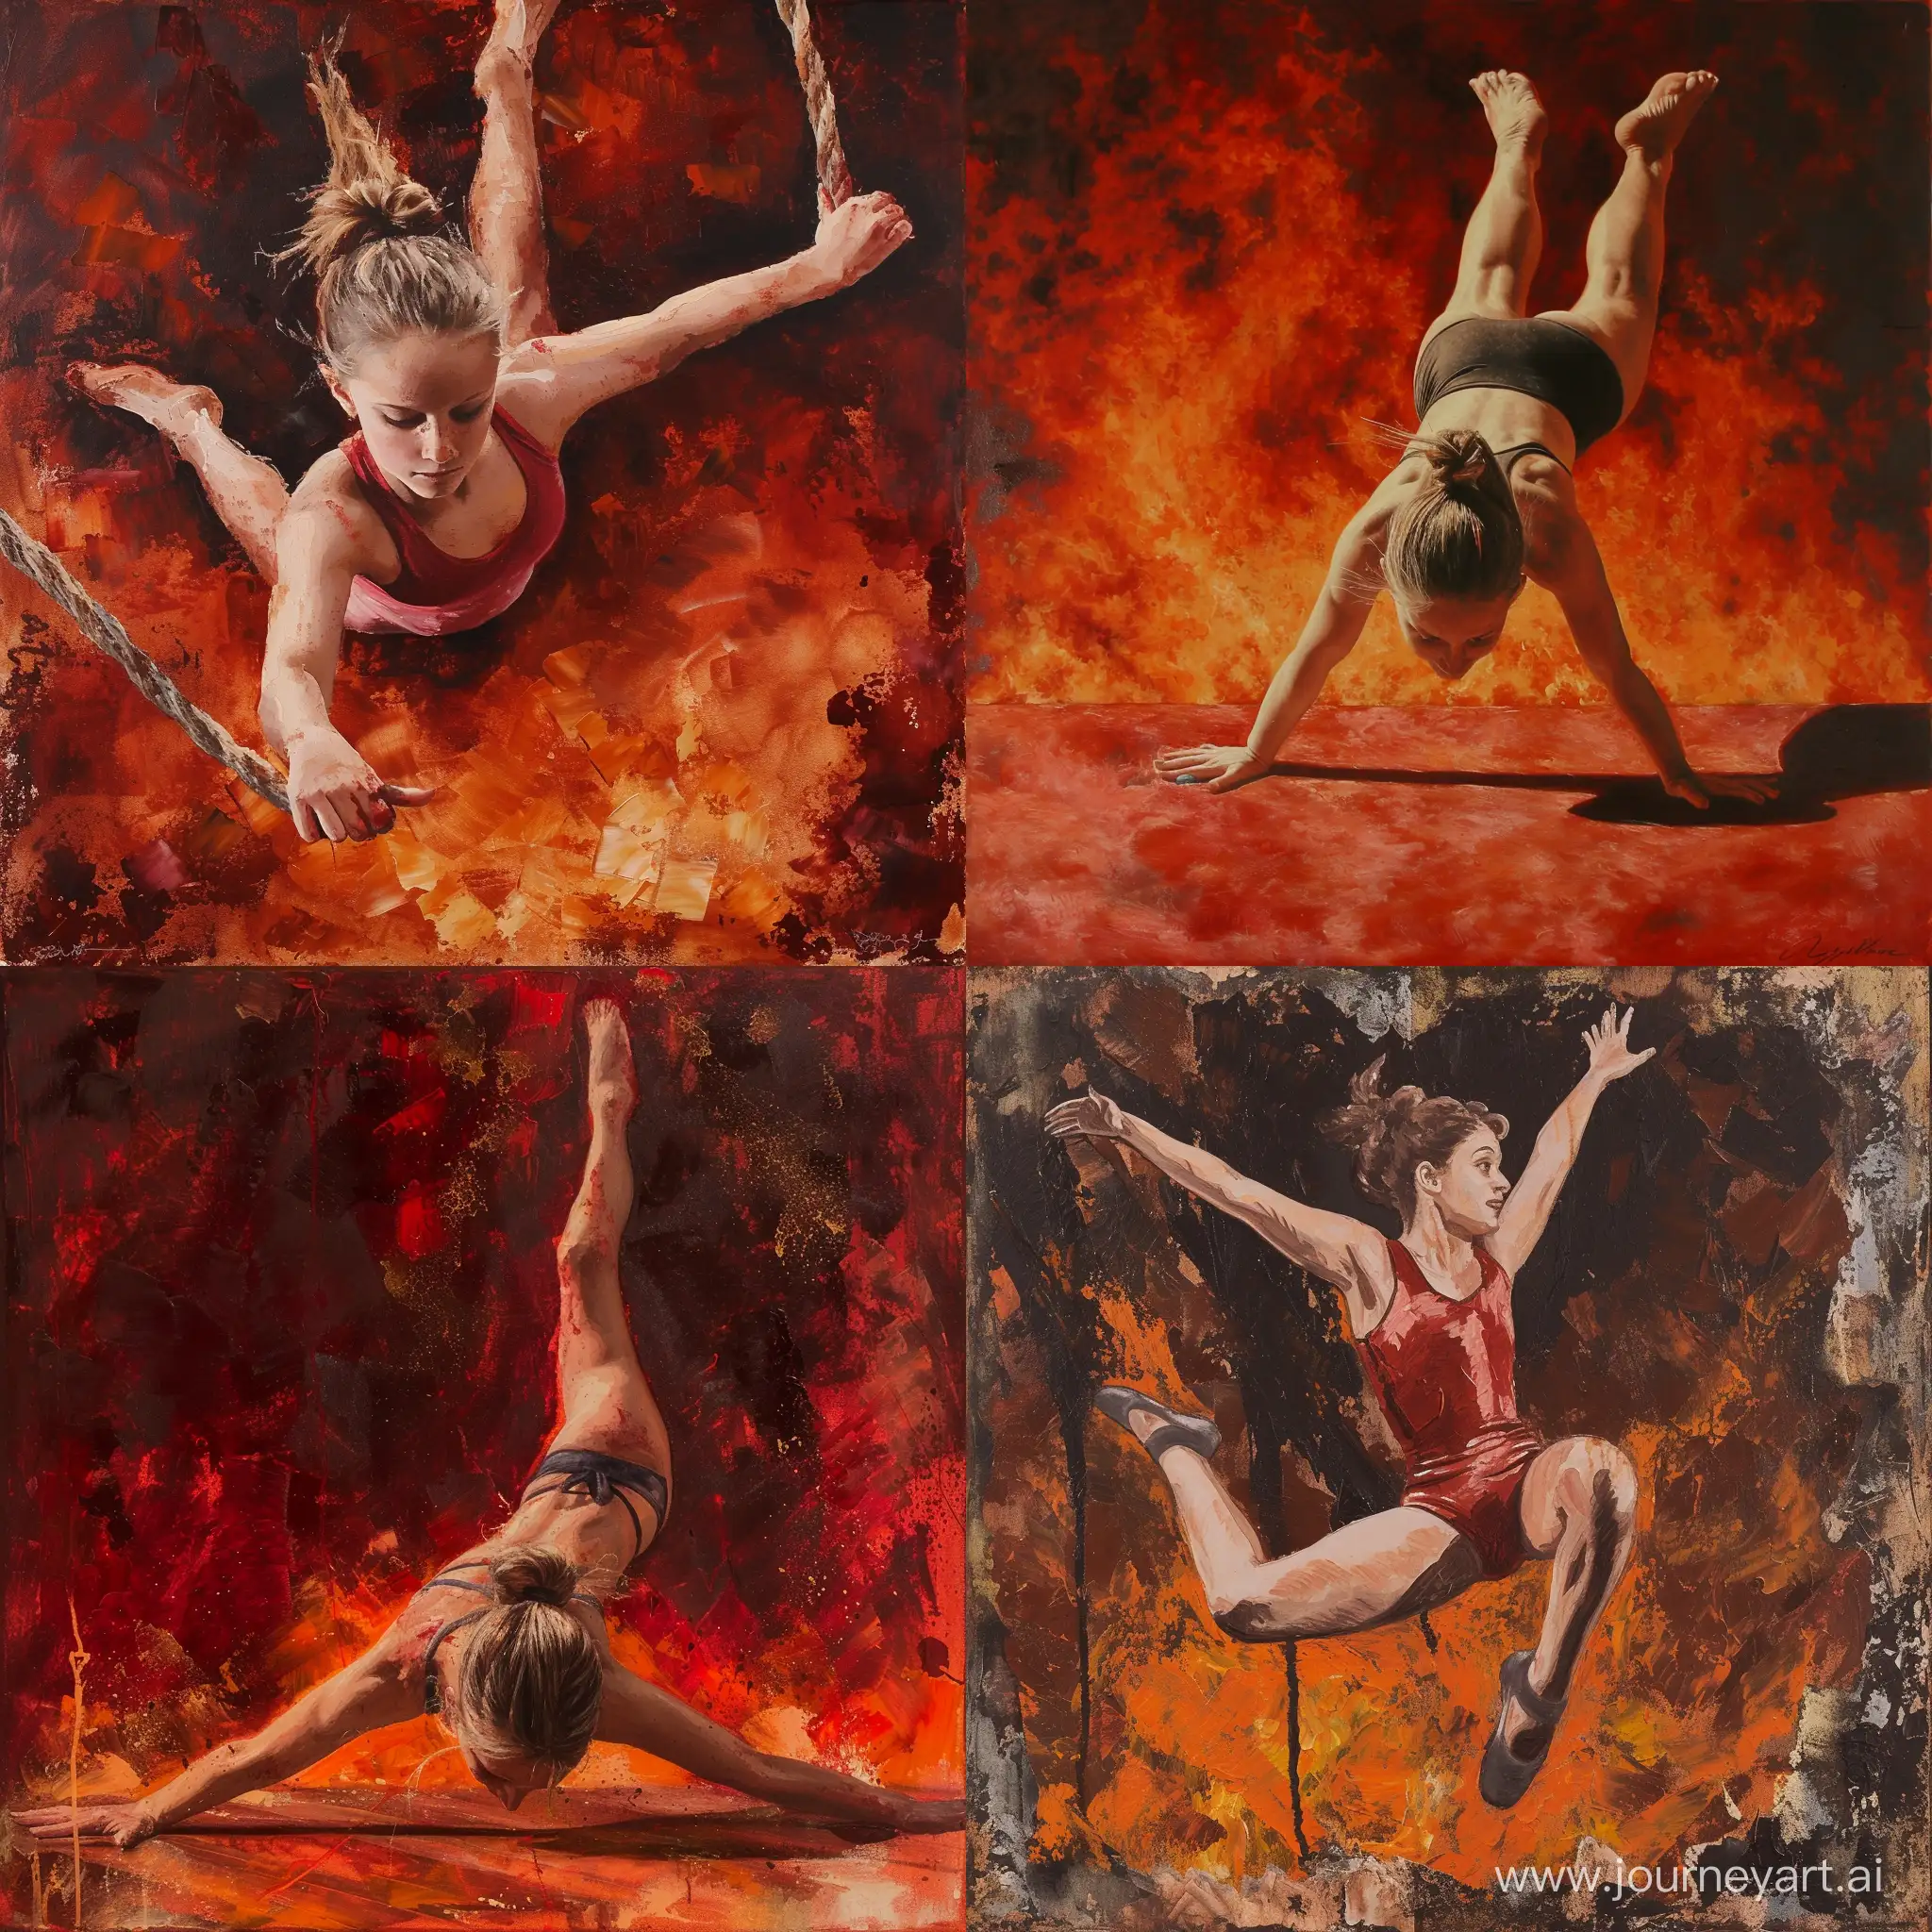 Energetic-12YearOld-Gymnast-Mastering-Moves-in-Fiery-Artistic-Display